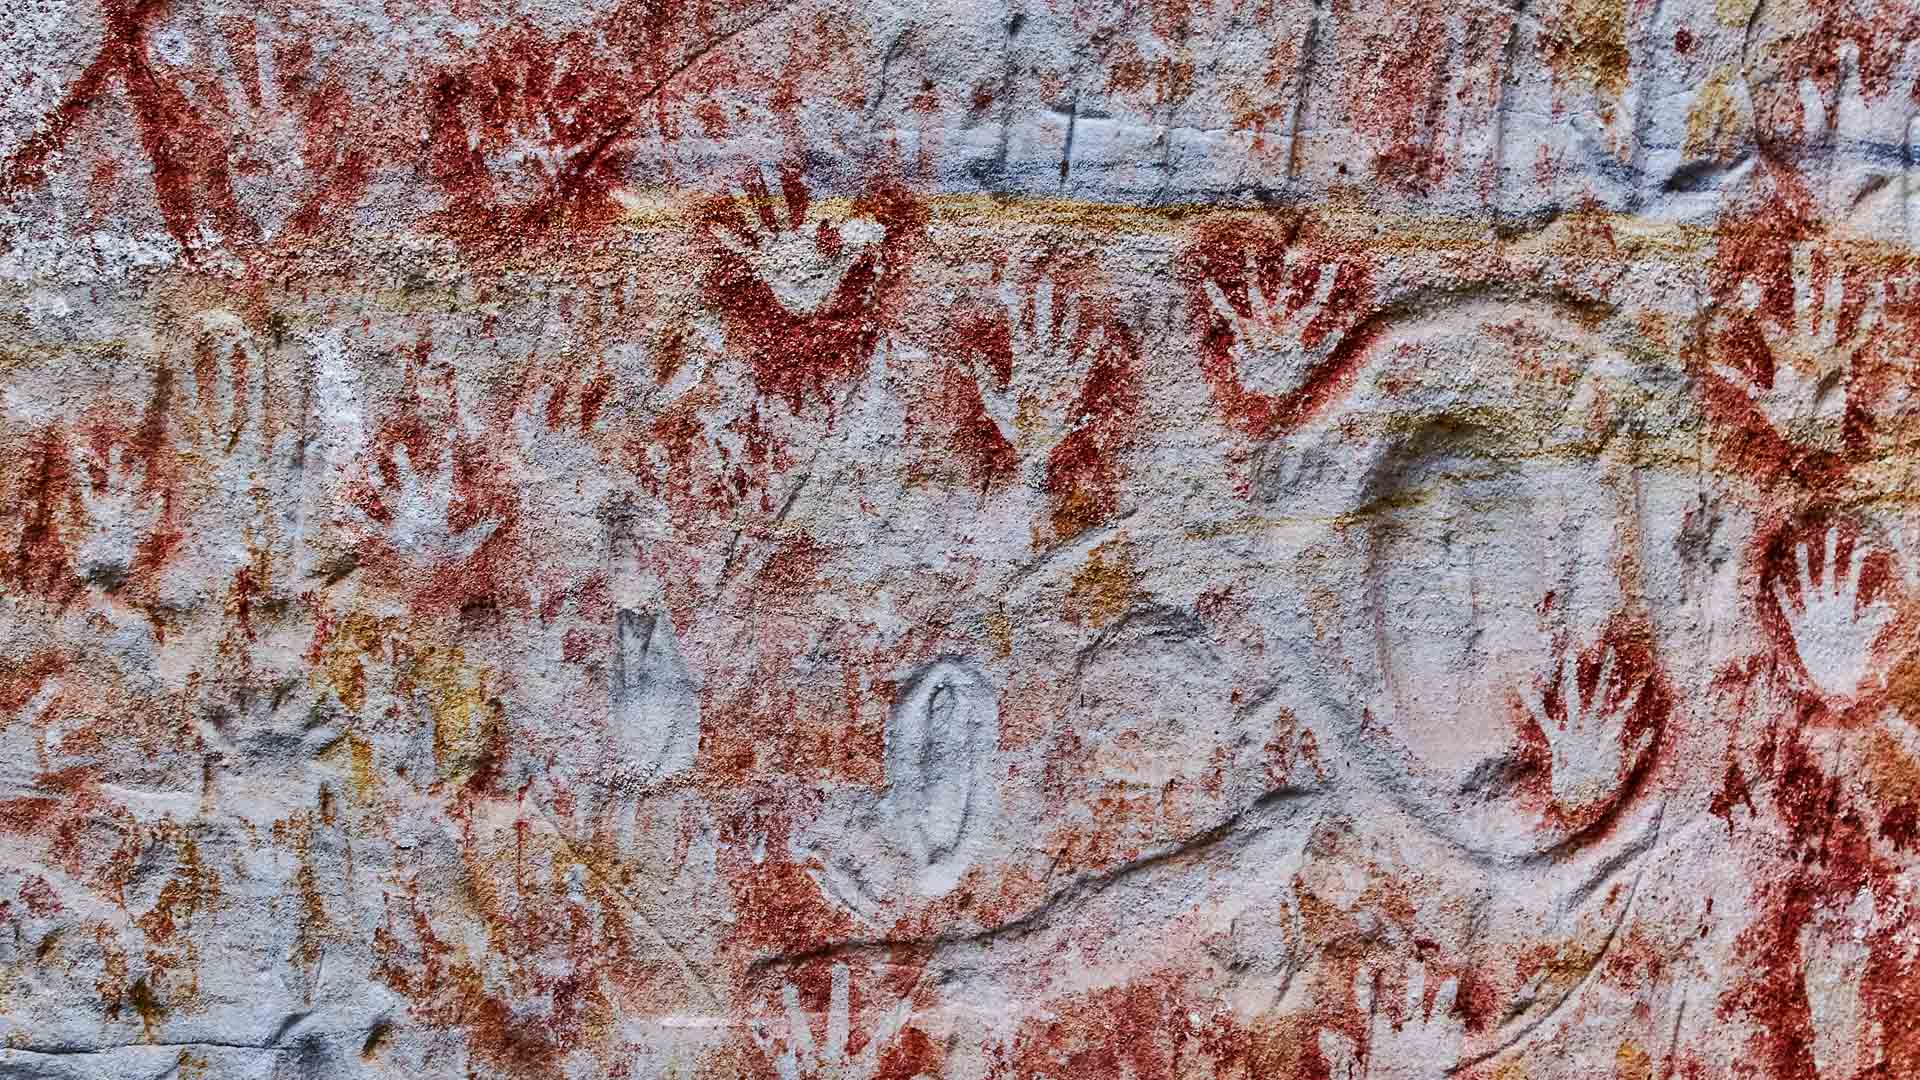 Aboriginal stencil art in Carnarvon Gorge National Park, Queensland, Australia.